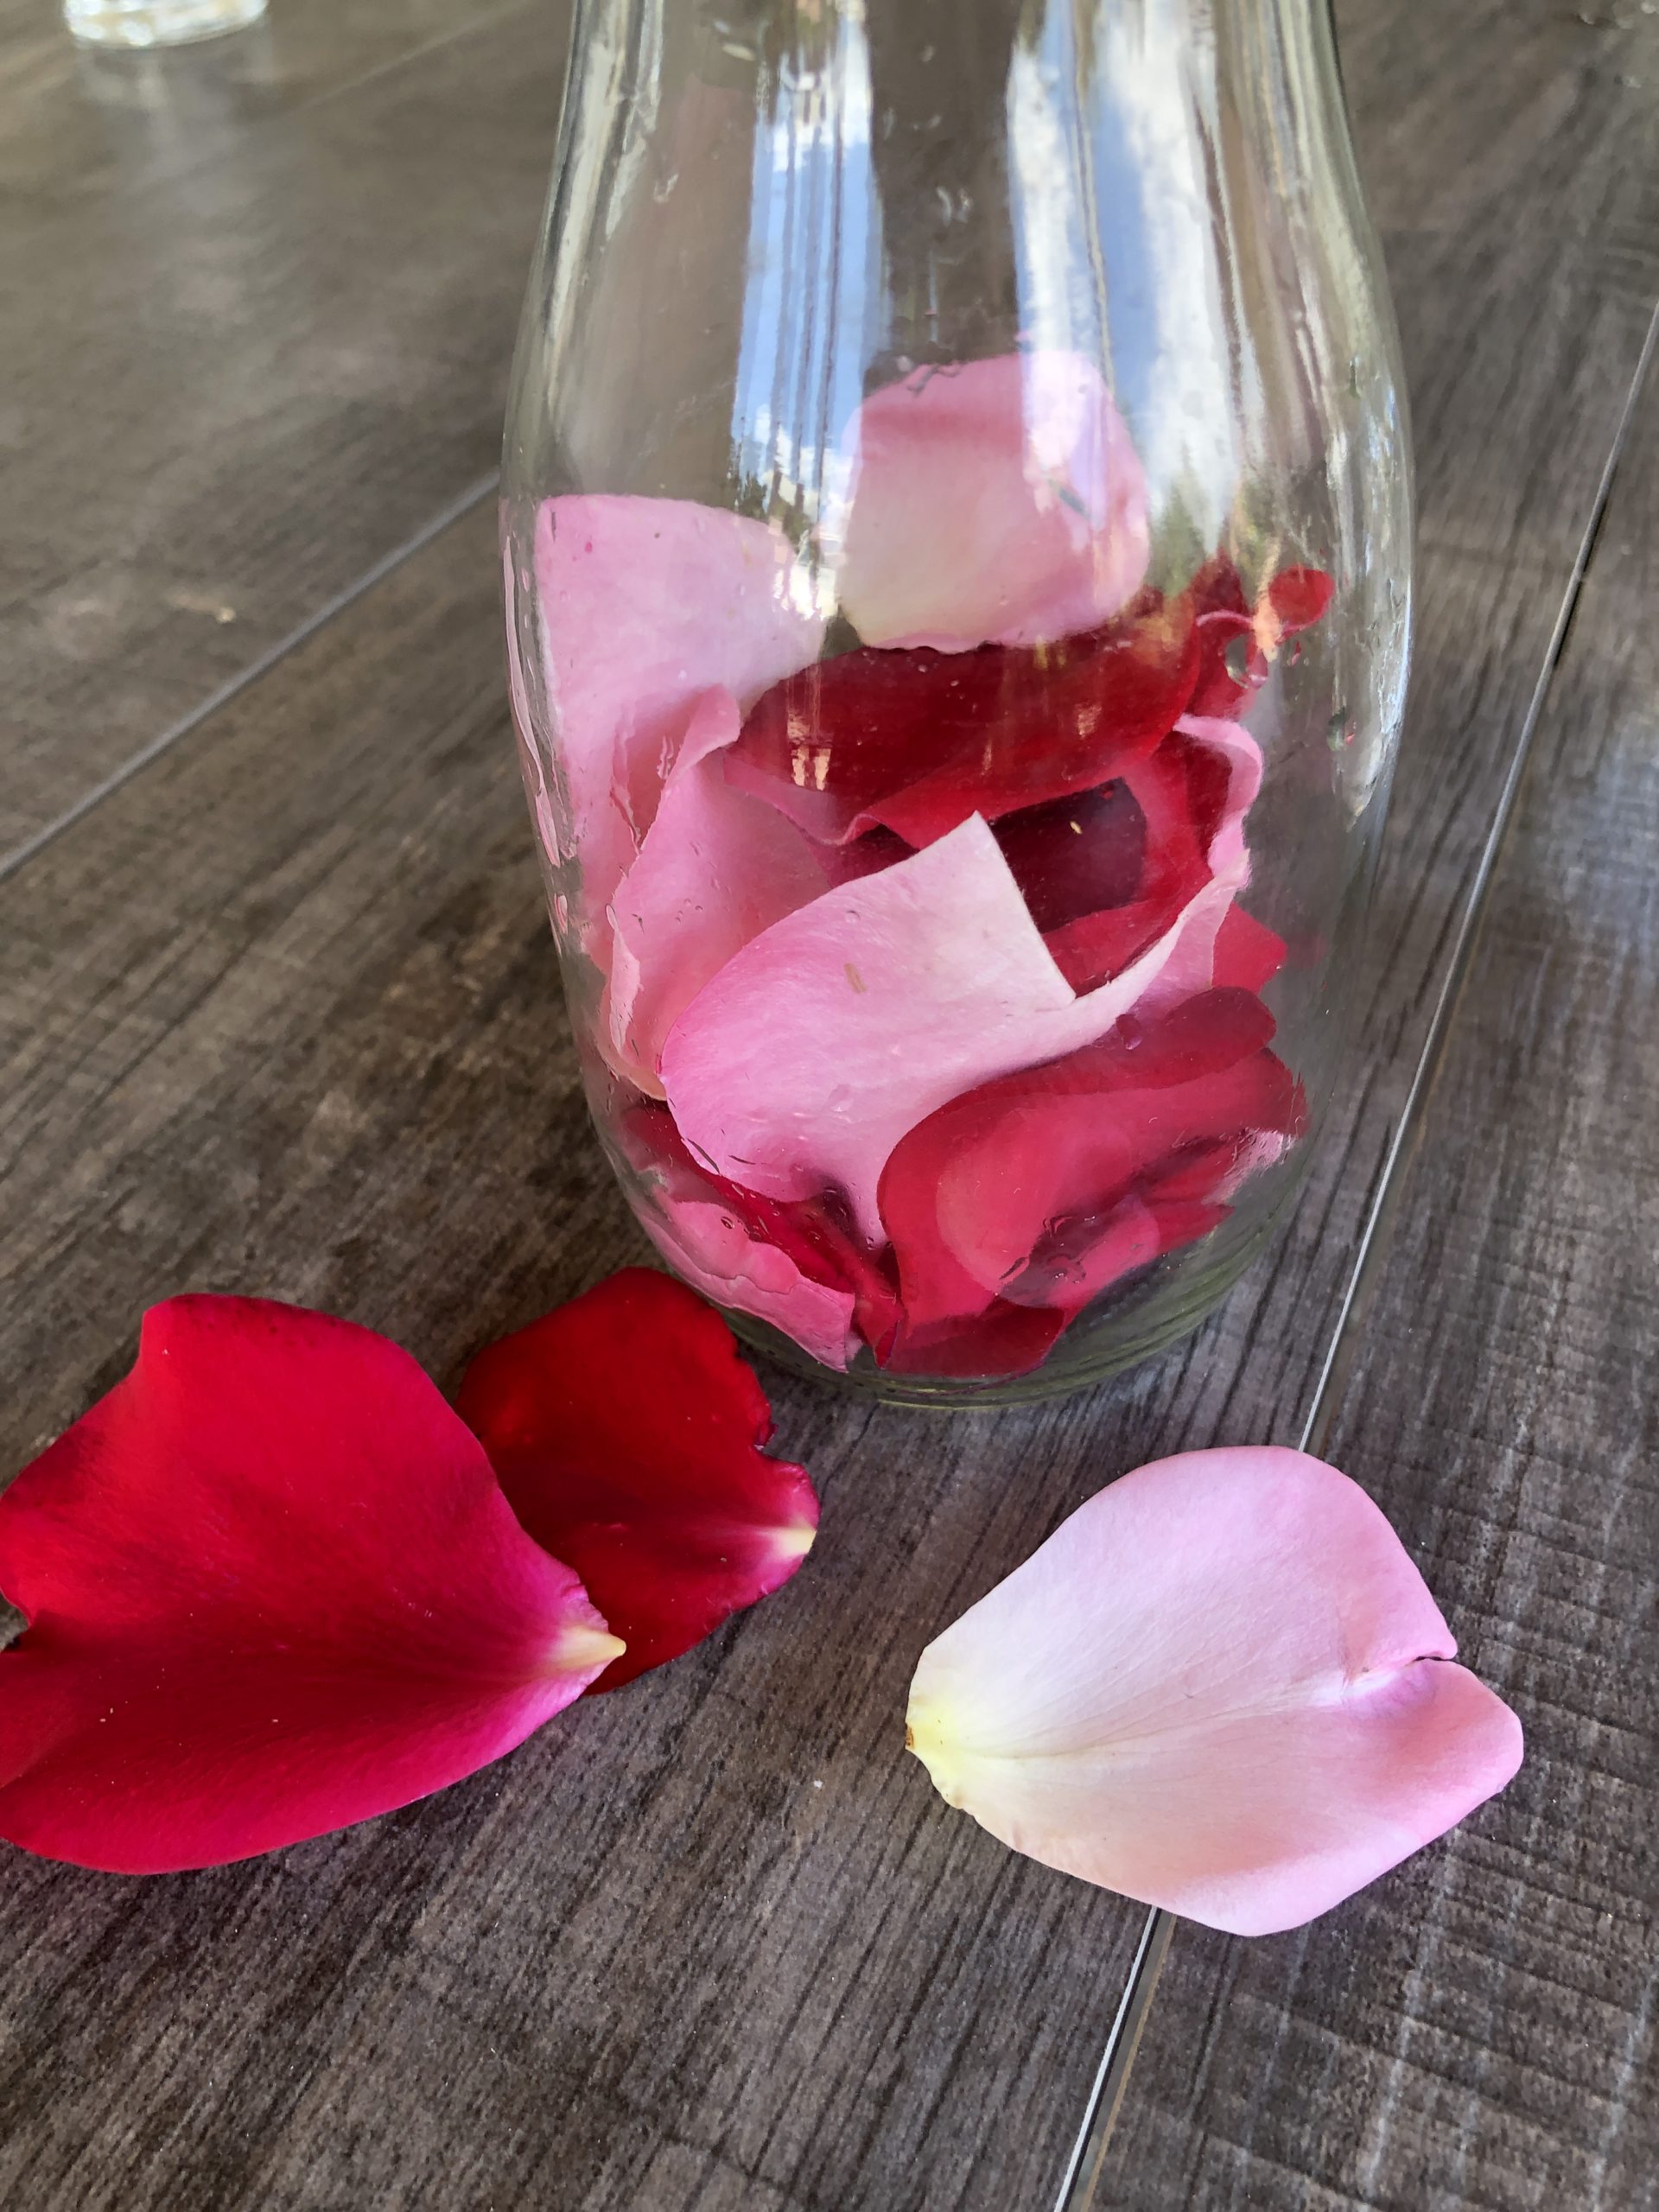 Bild zum Schritt 5 für das Bastel- und DIY-Abenteuer für Kinder: 'Rosenblütenblätter in eine Glaskanne füllen.'